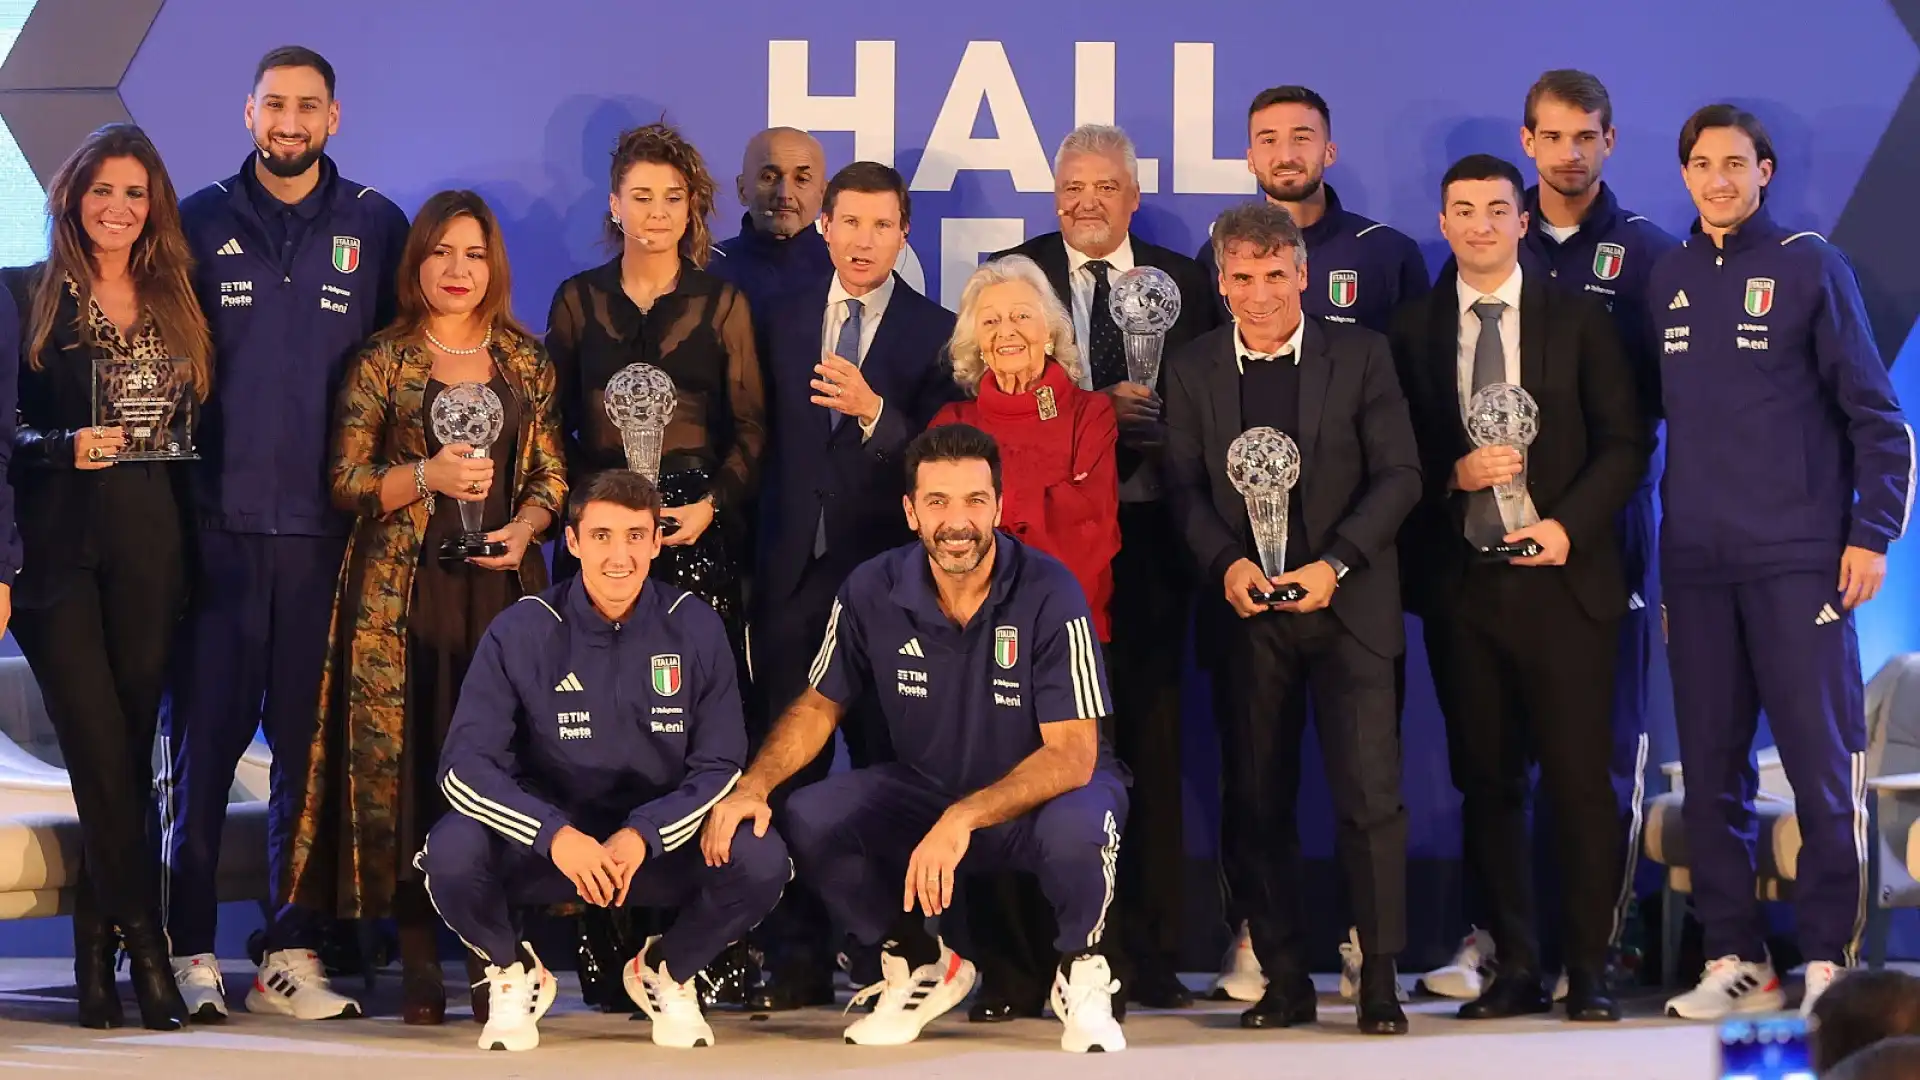 Hall of Fame del calcio italiano, premiati ‘Spillo’ Altobelli, Gianfranco Zola e Cristiana Girelli